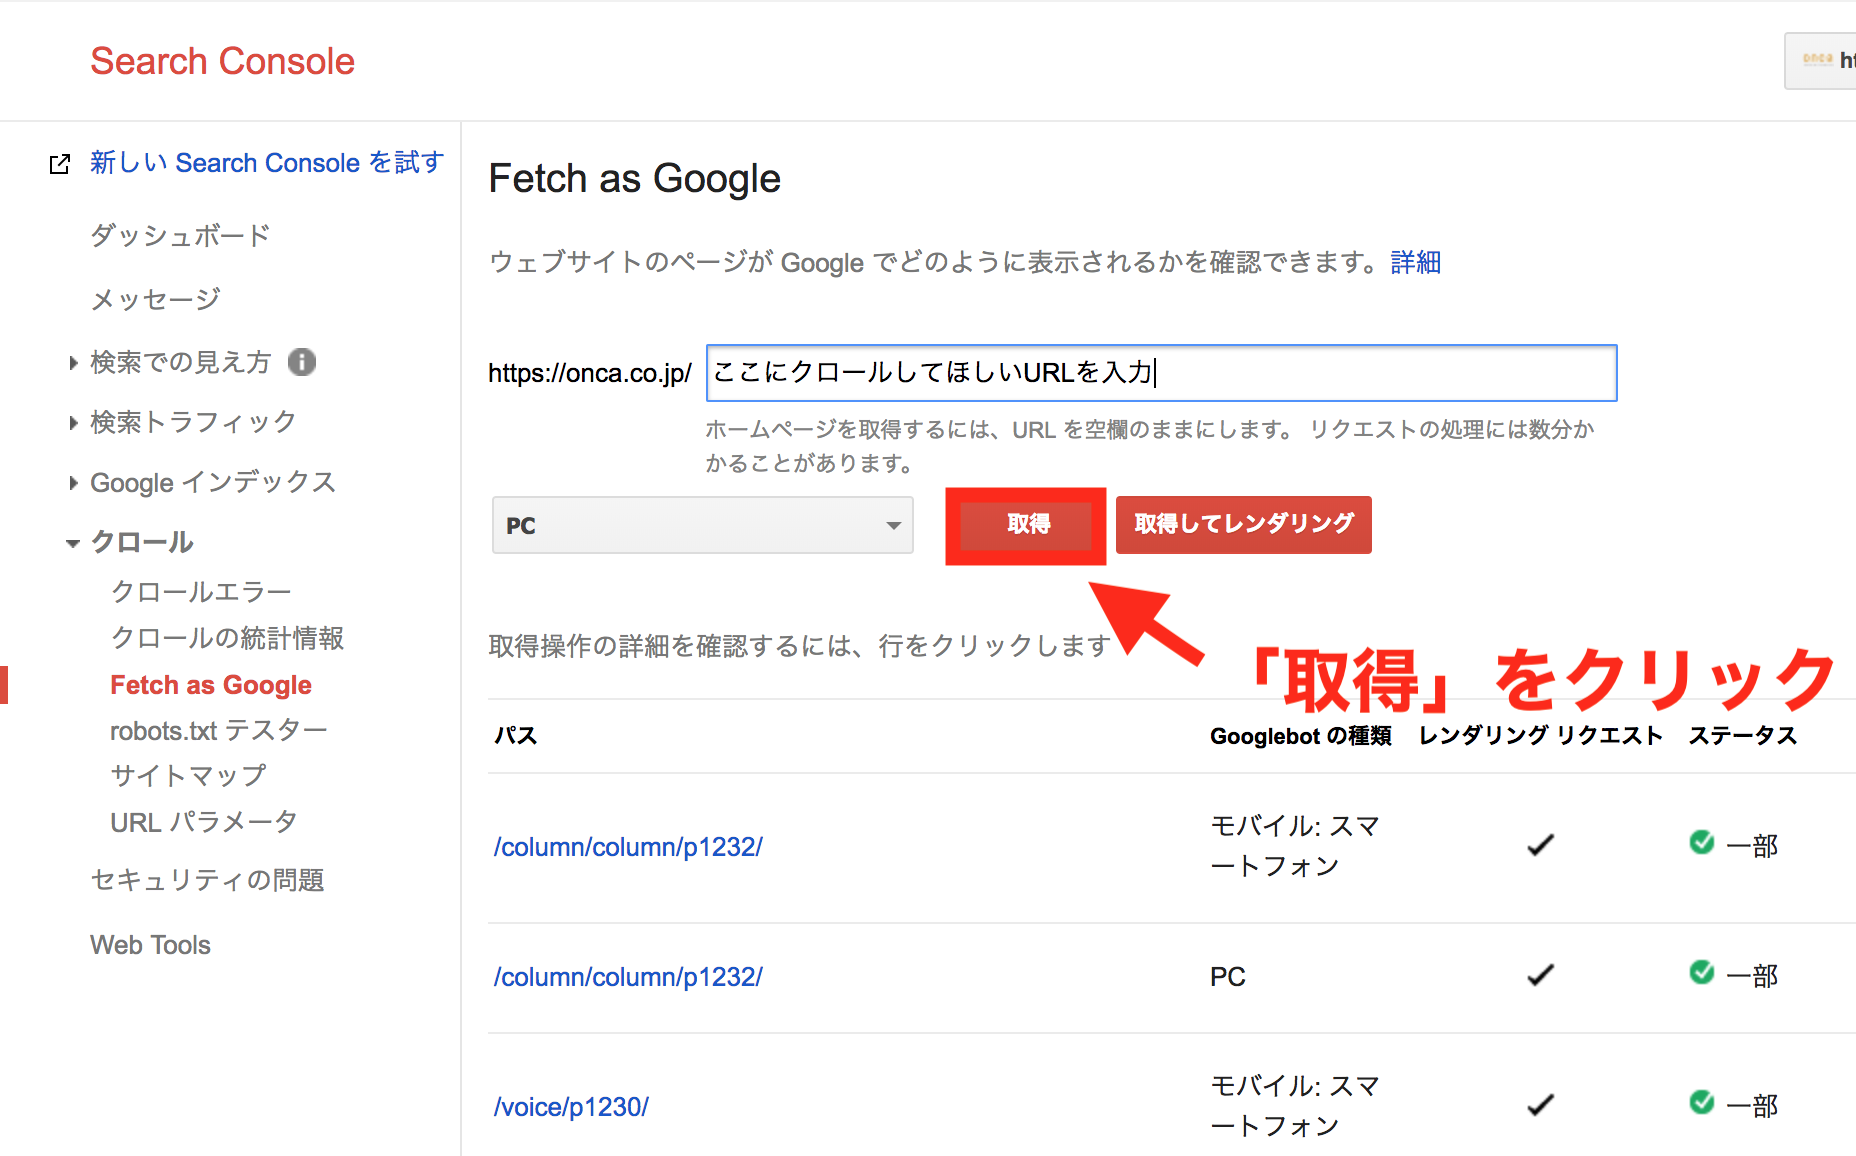 Fetch as Google④